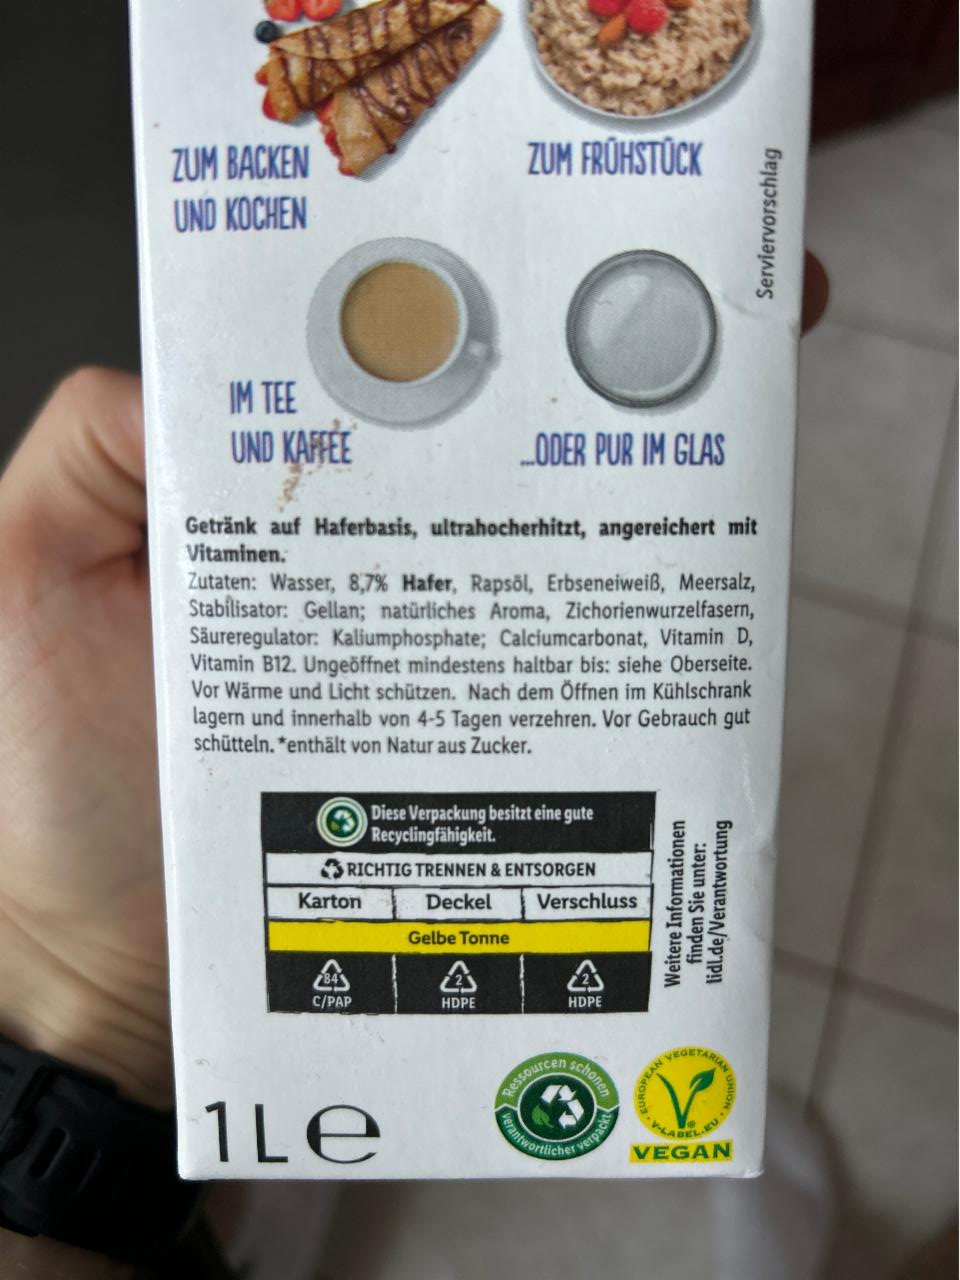 No milk Hafer 3,5% Vemondo - kalória, kJ és tápértékek